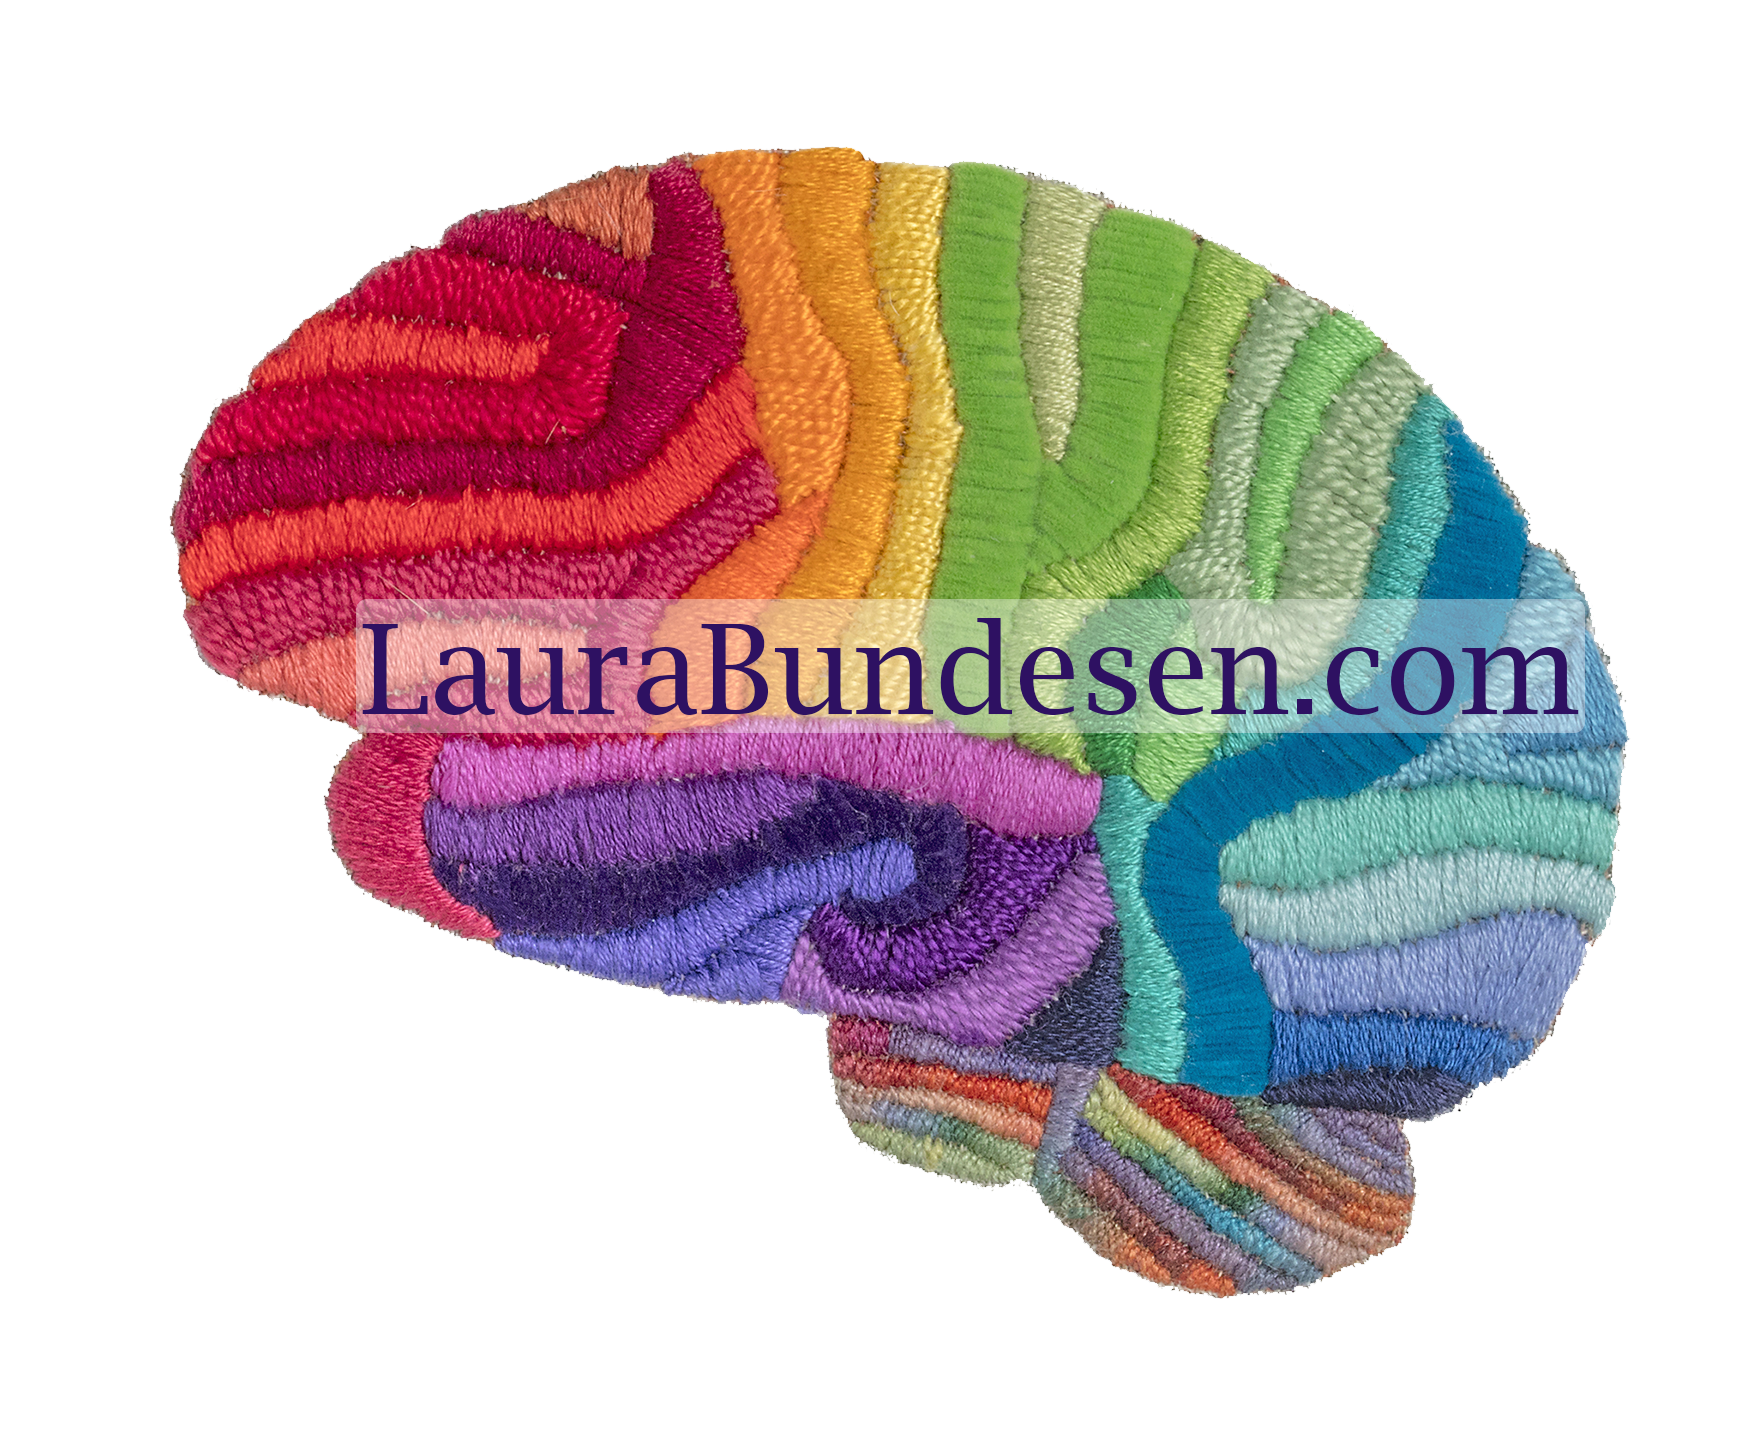 Bundesen.logo